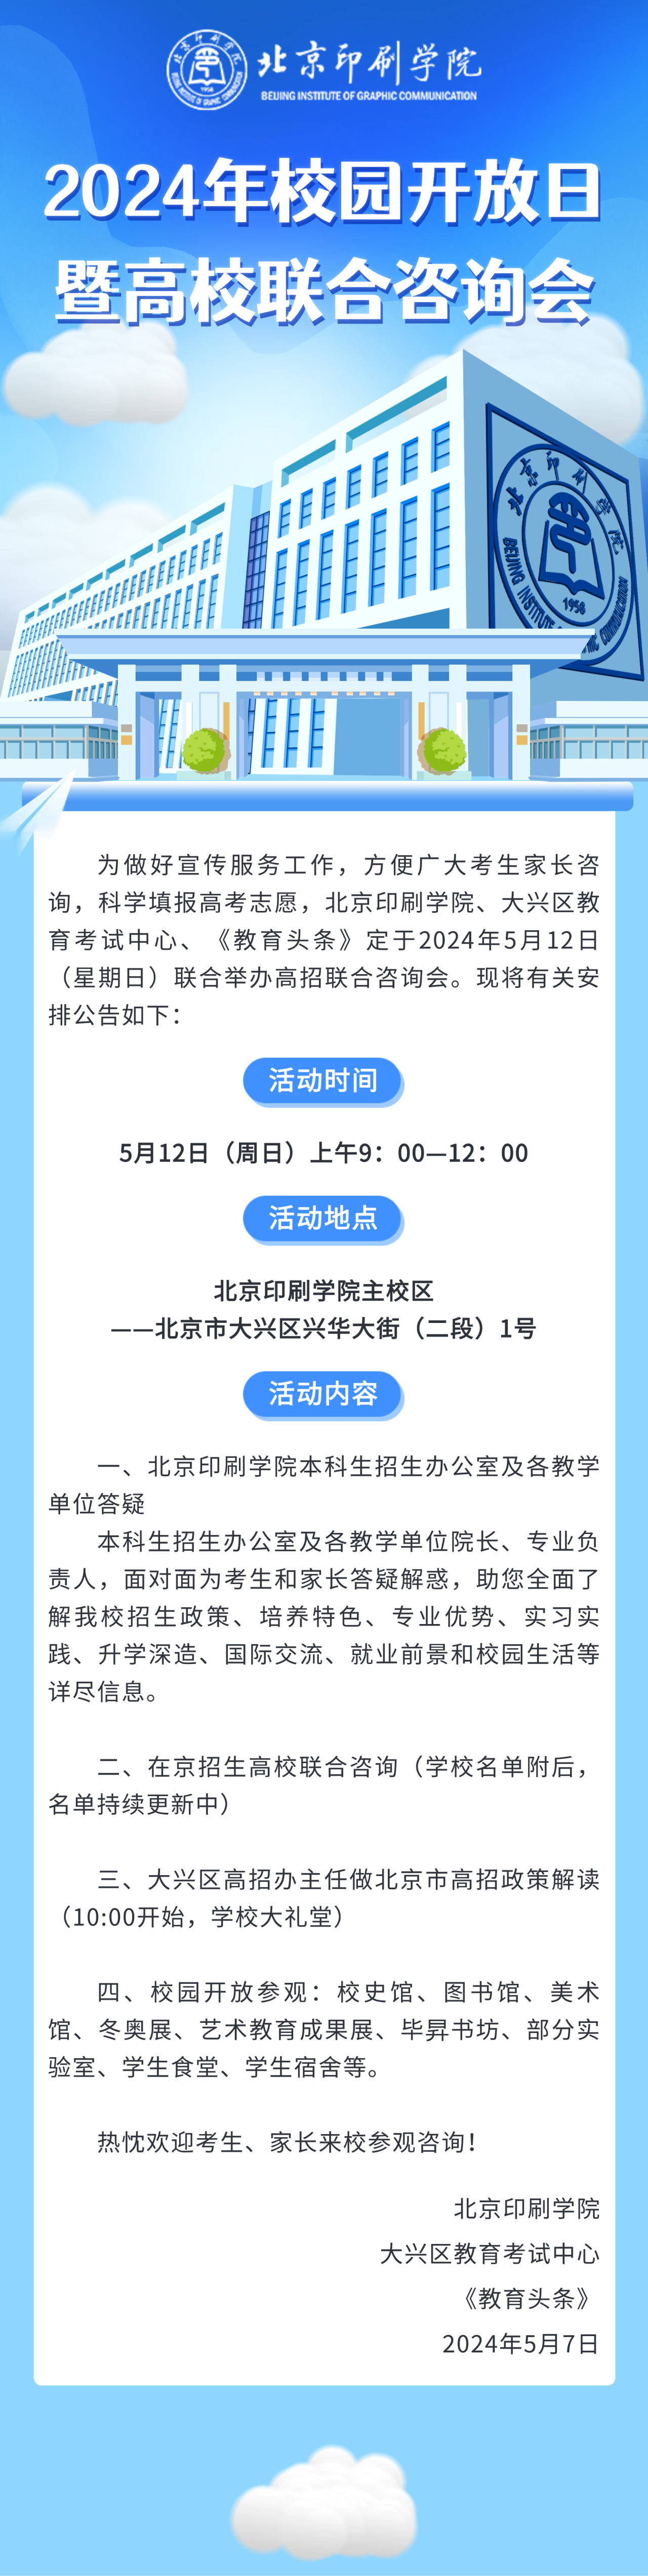 北京印刷学院2024年校园开放日暨高校联合咨询会公告